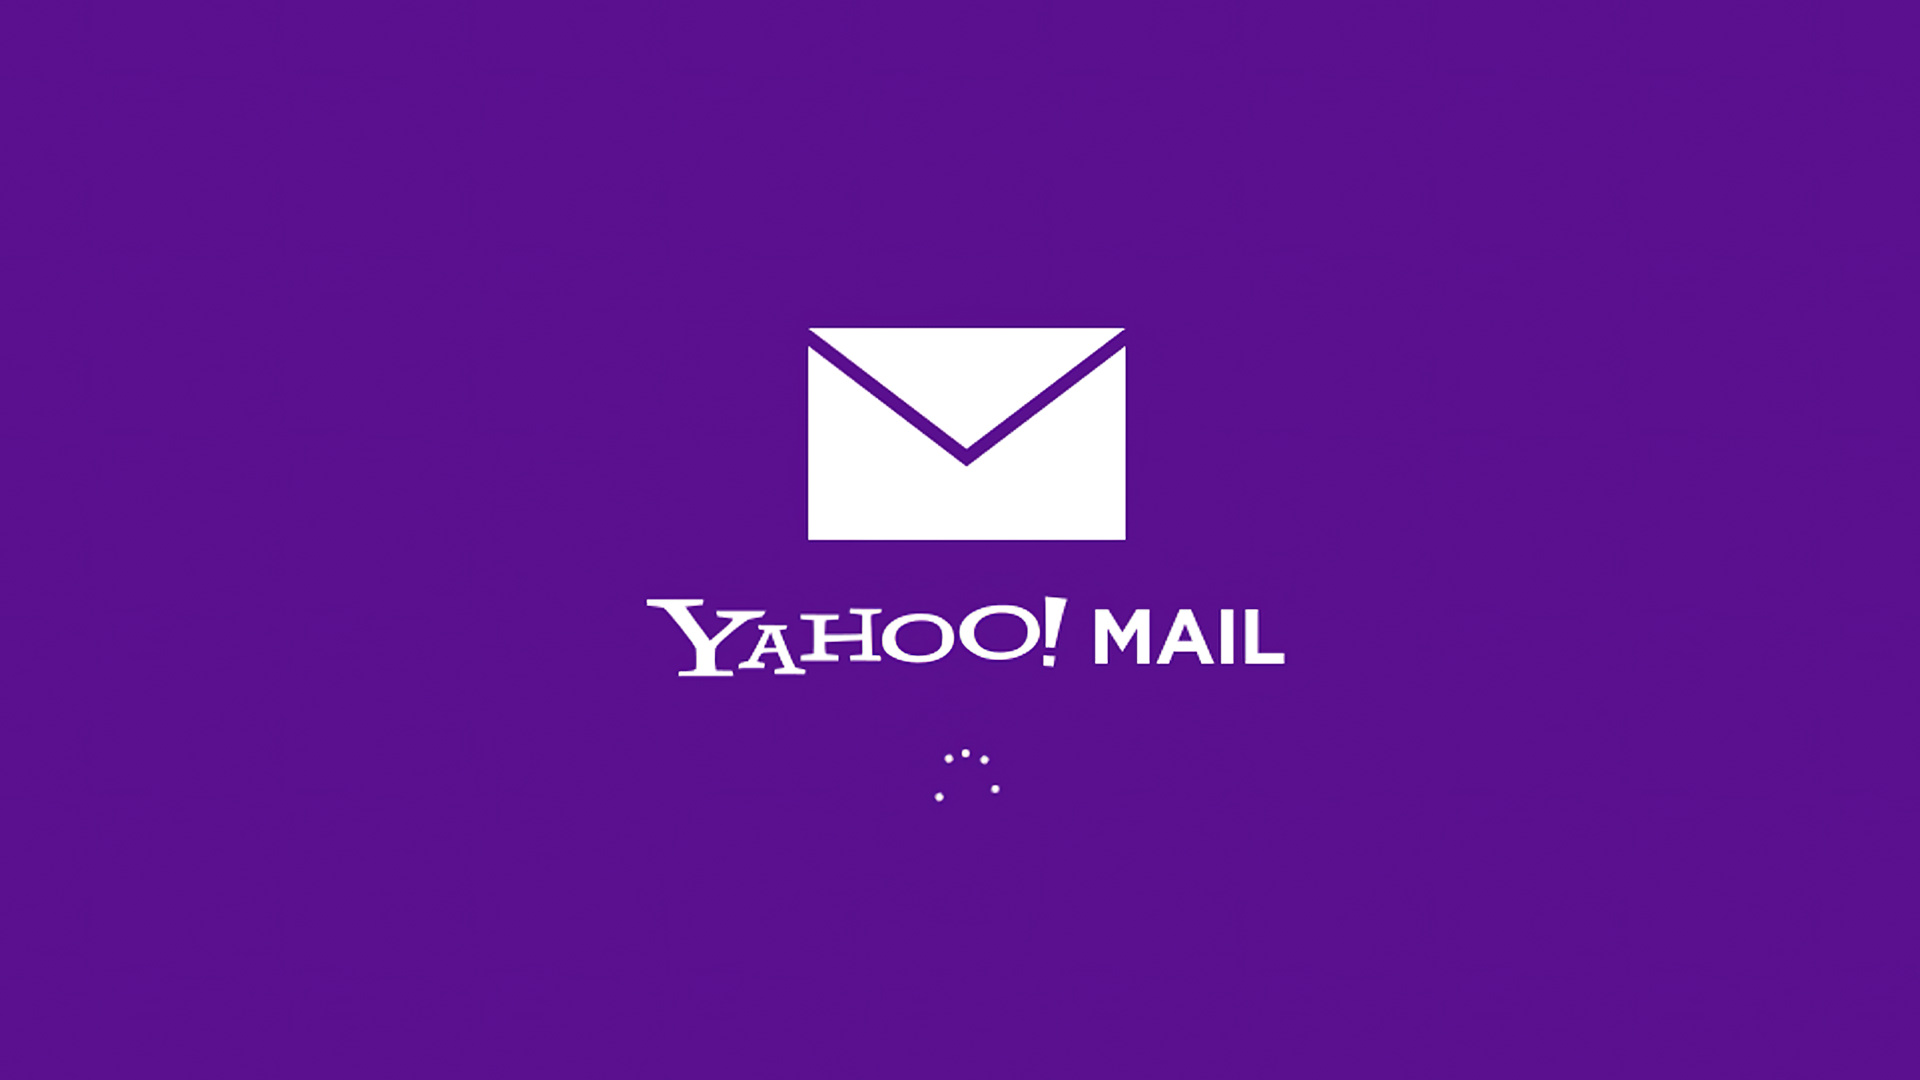 Yahoo Mail non funziona: come risolverlo rapidamente?